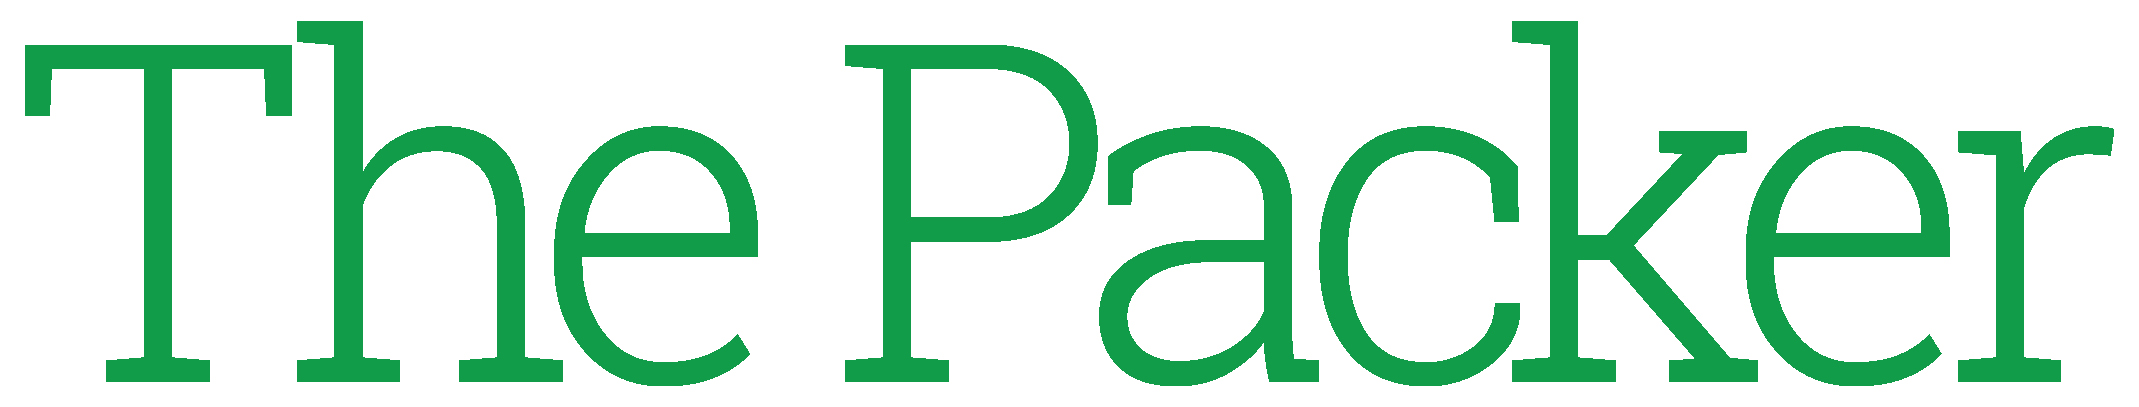 The Packer Logo